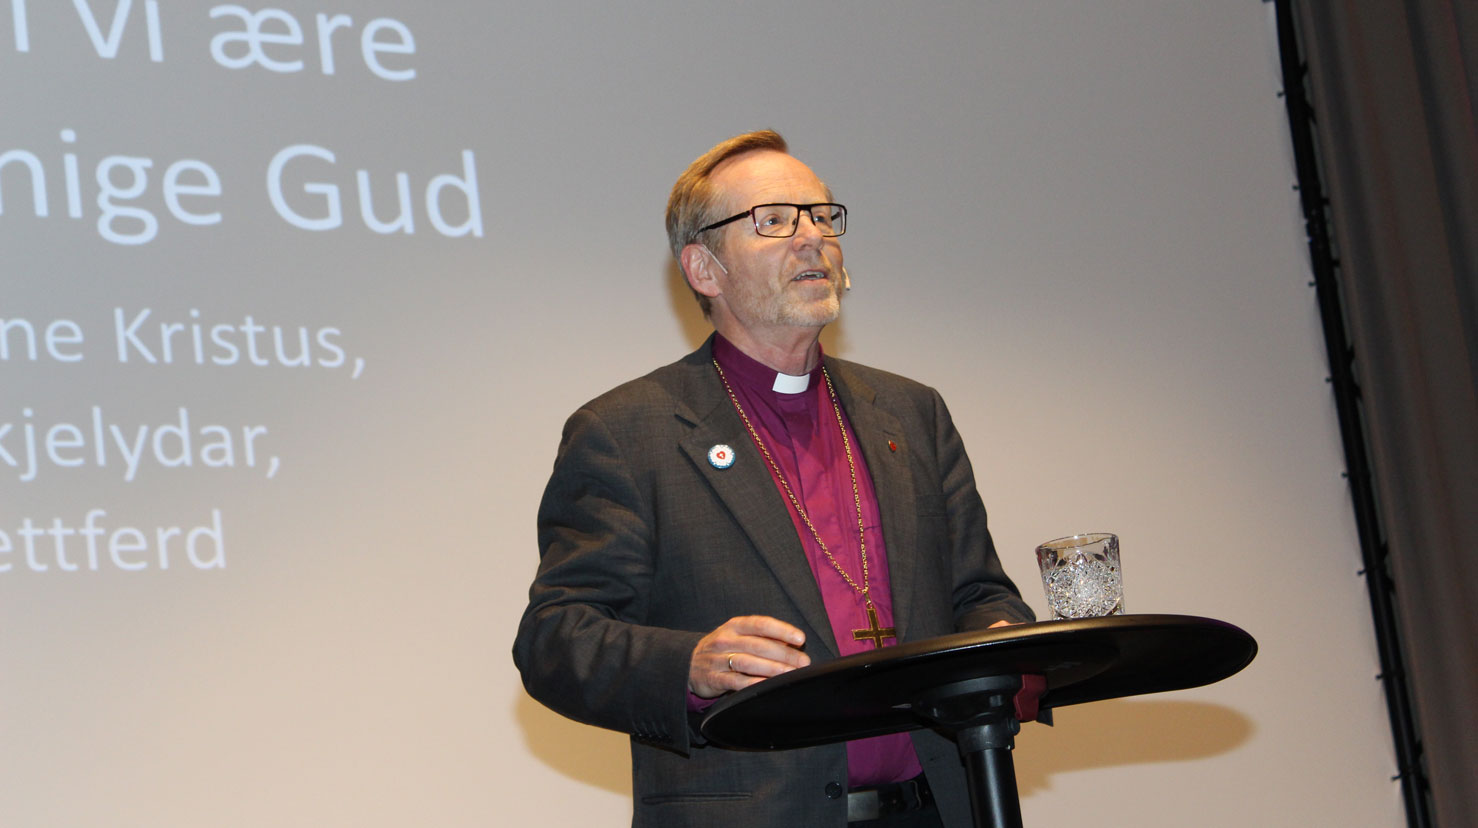 Biskop Halvor Nordhaug blir å høyra både i Bergen domkirke med trusopplæring for vaksne og i Litteraturhuset der han samtalar med engasjerte gjester.